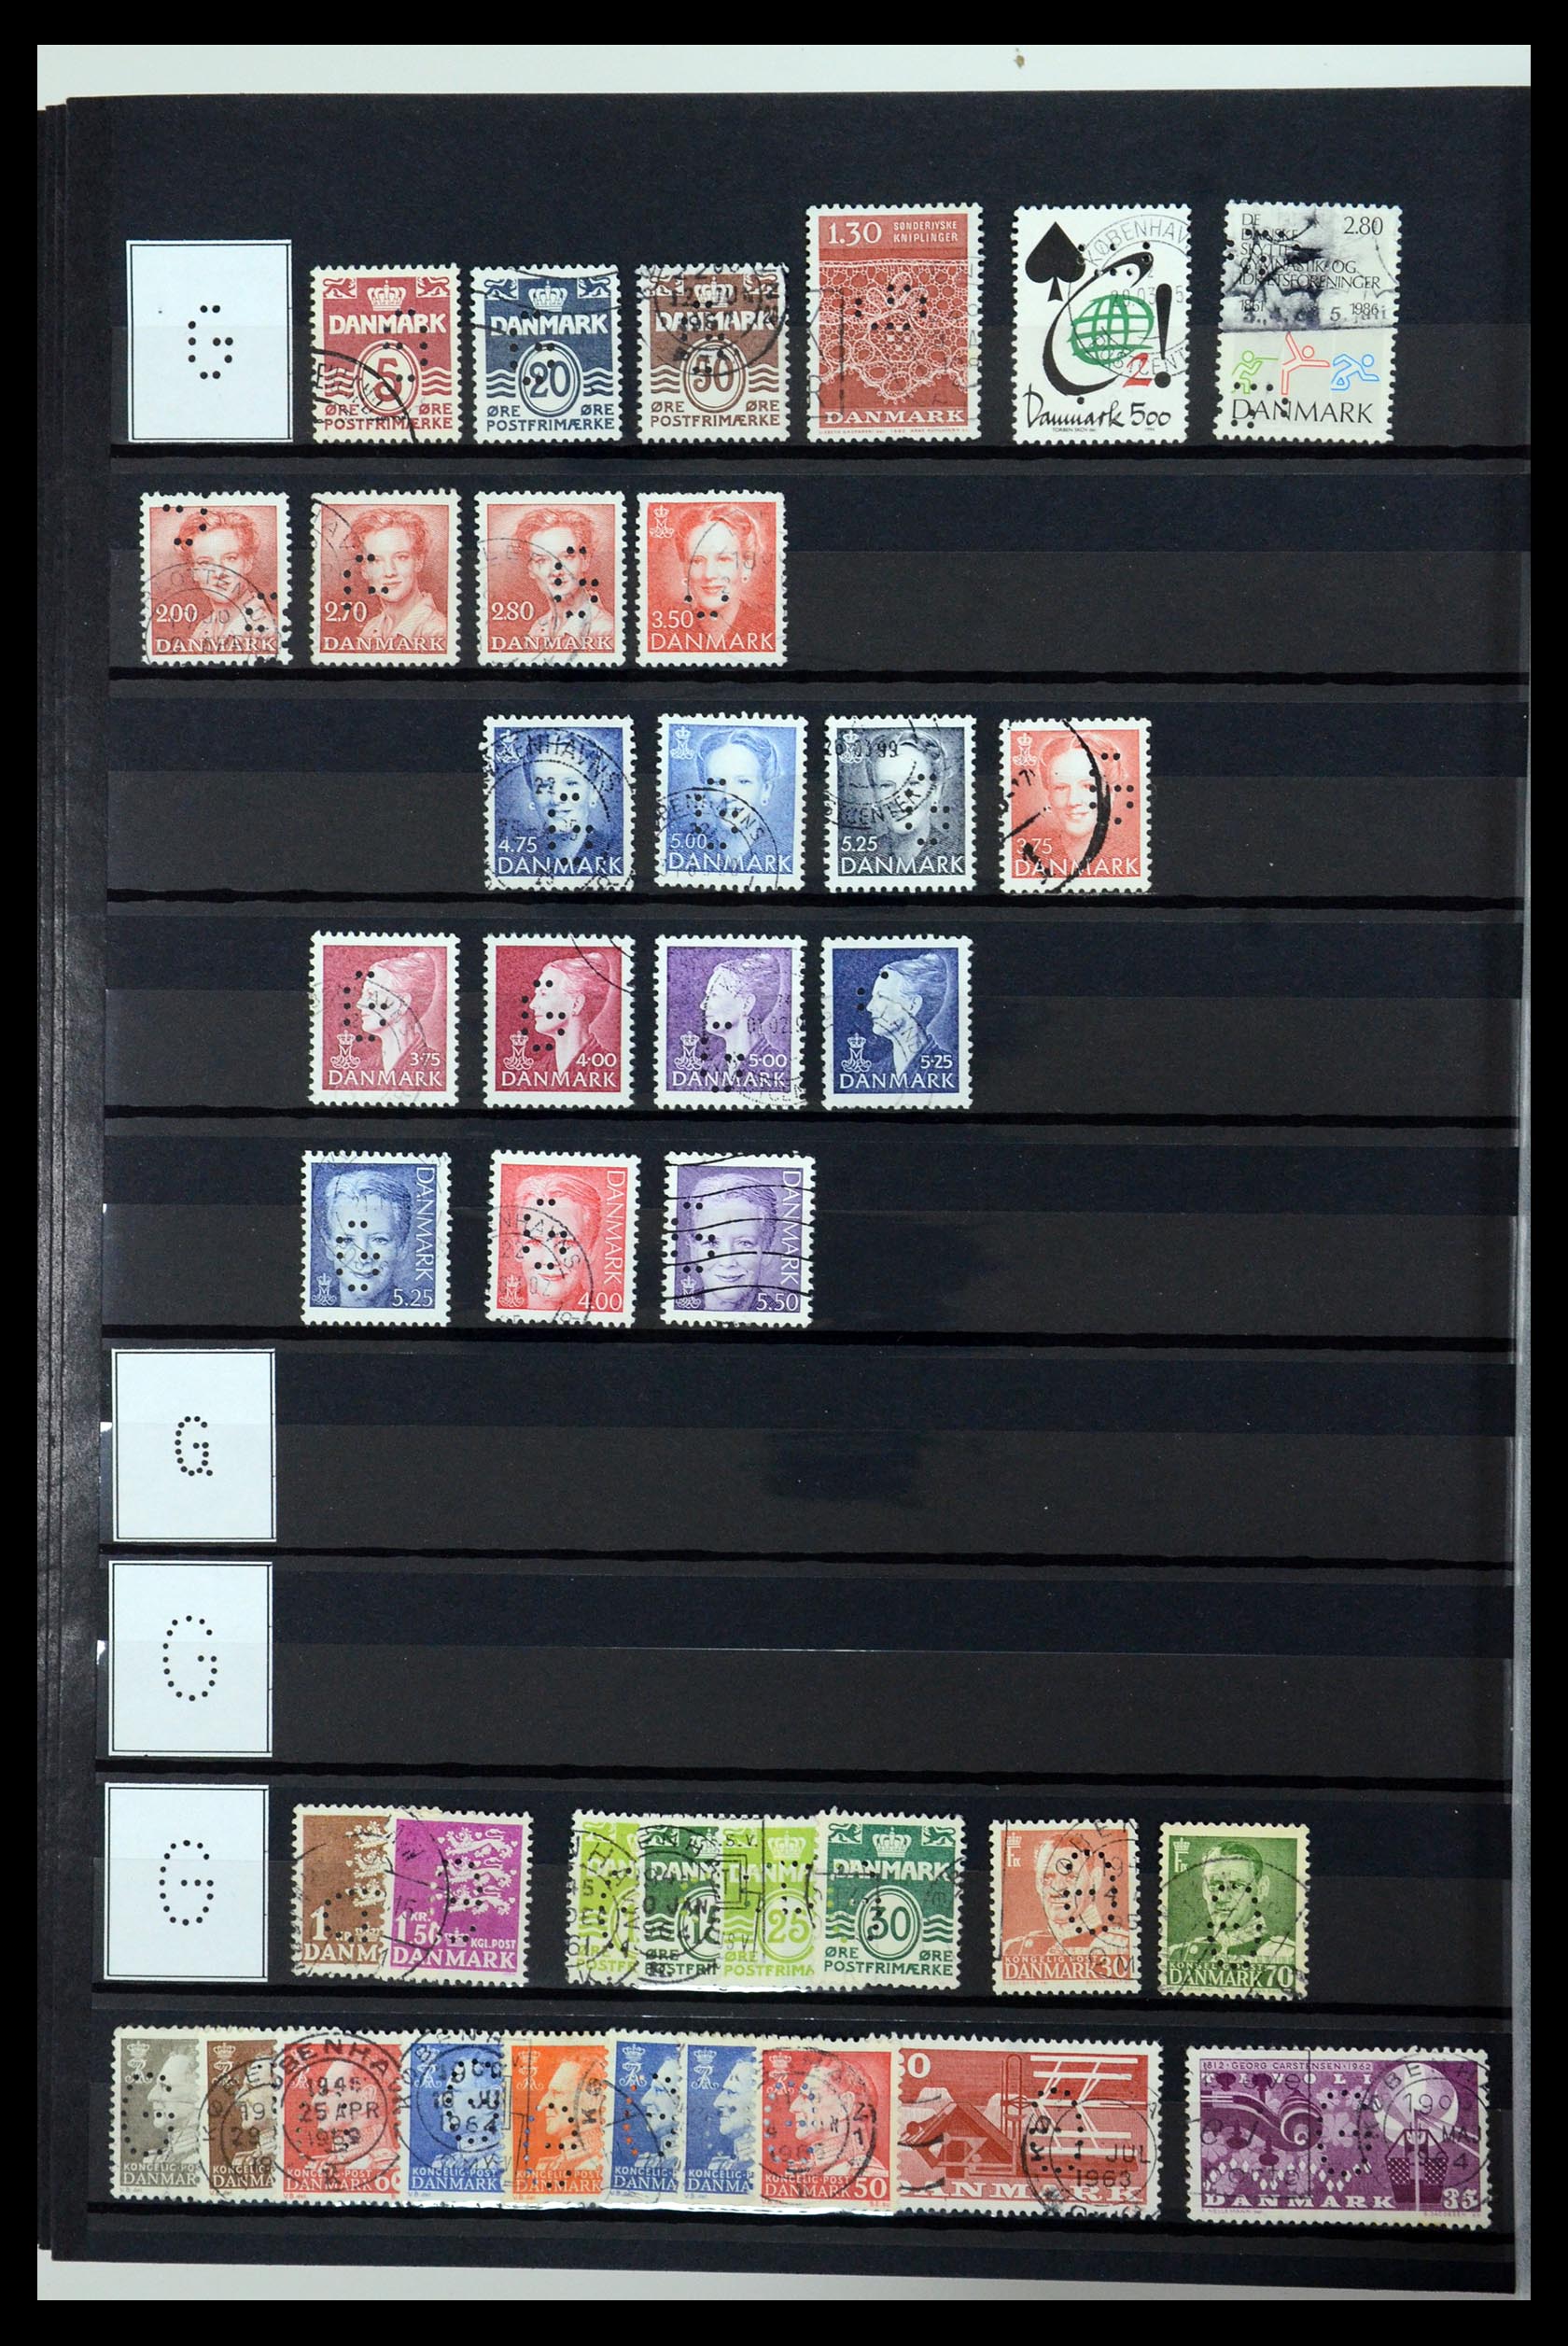 36396 057 - Postzegelverzameling 36396 Denemarken perfins.